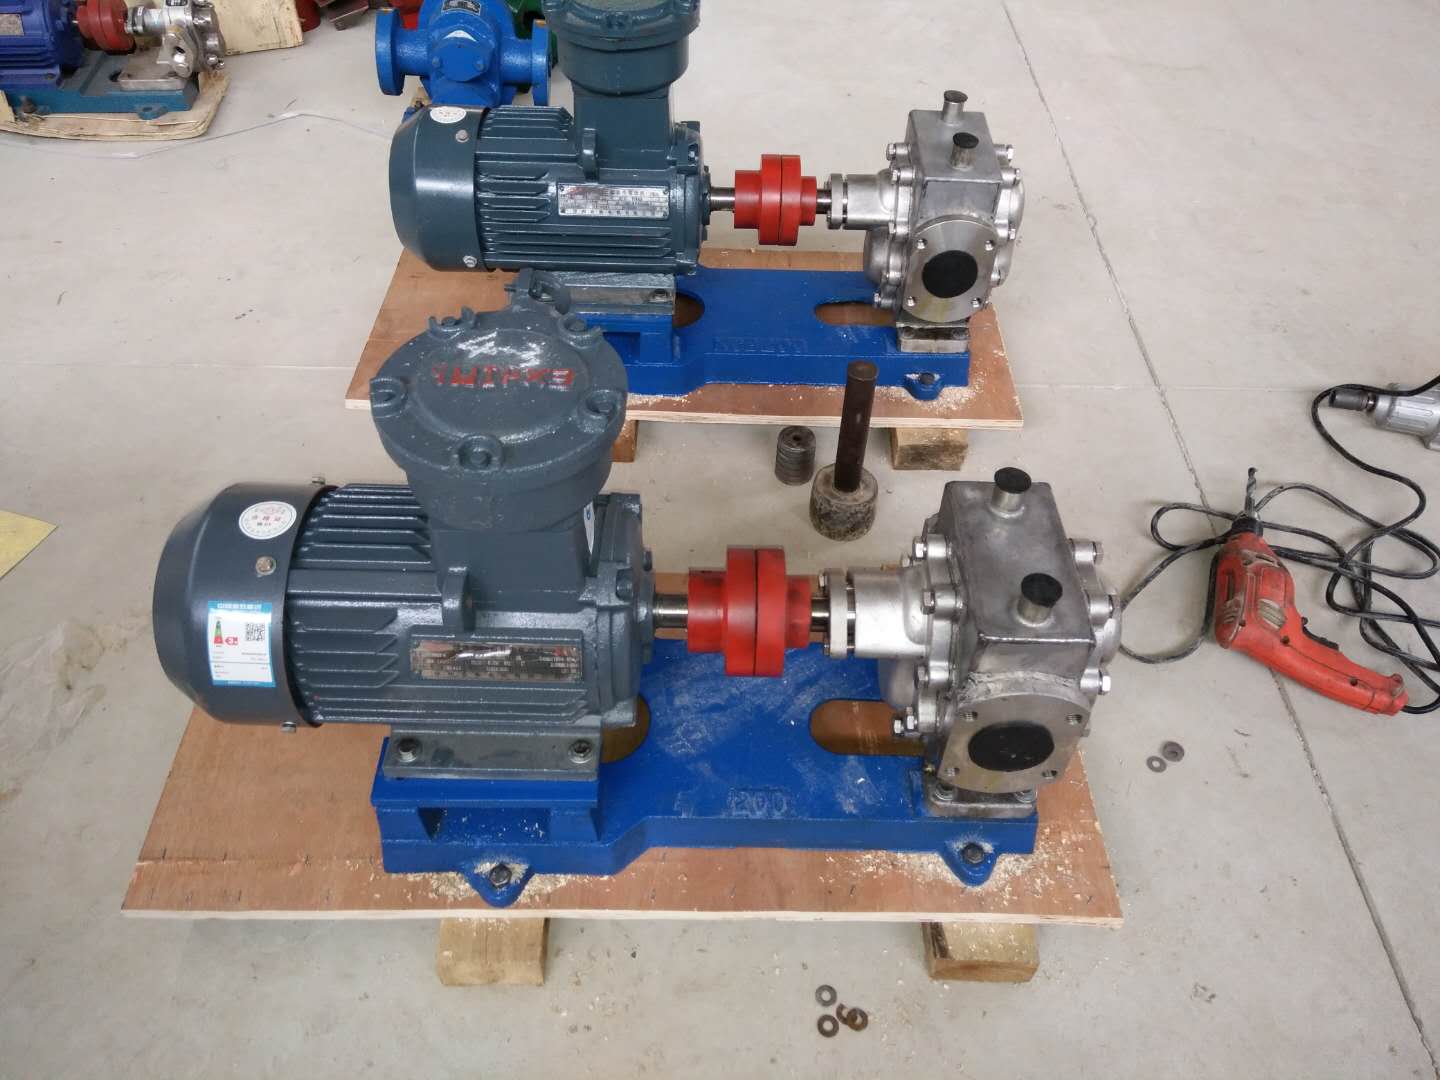 供应RCB保温齿轮泵-高温泵-余工泵业